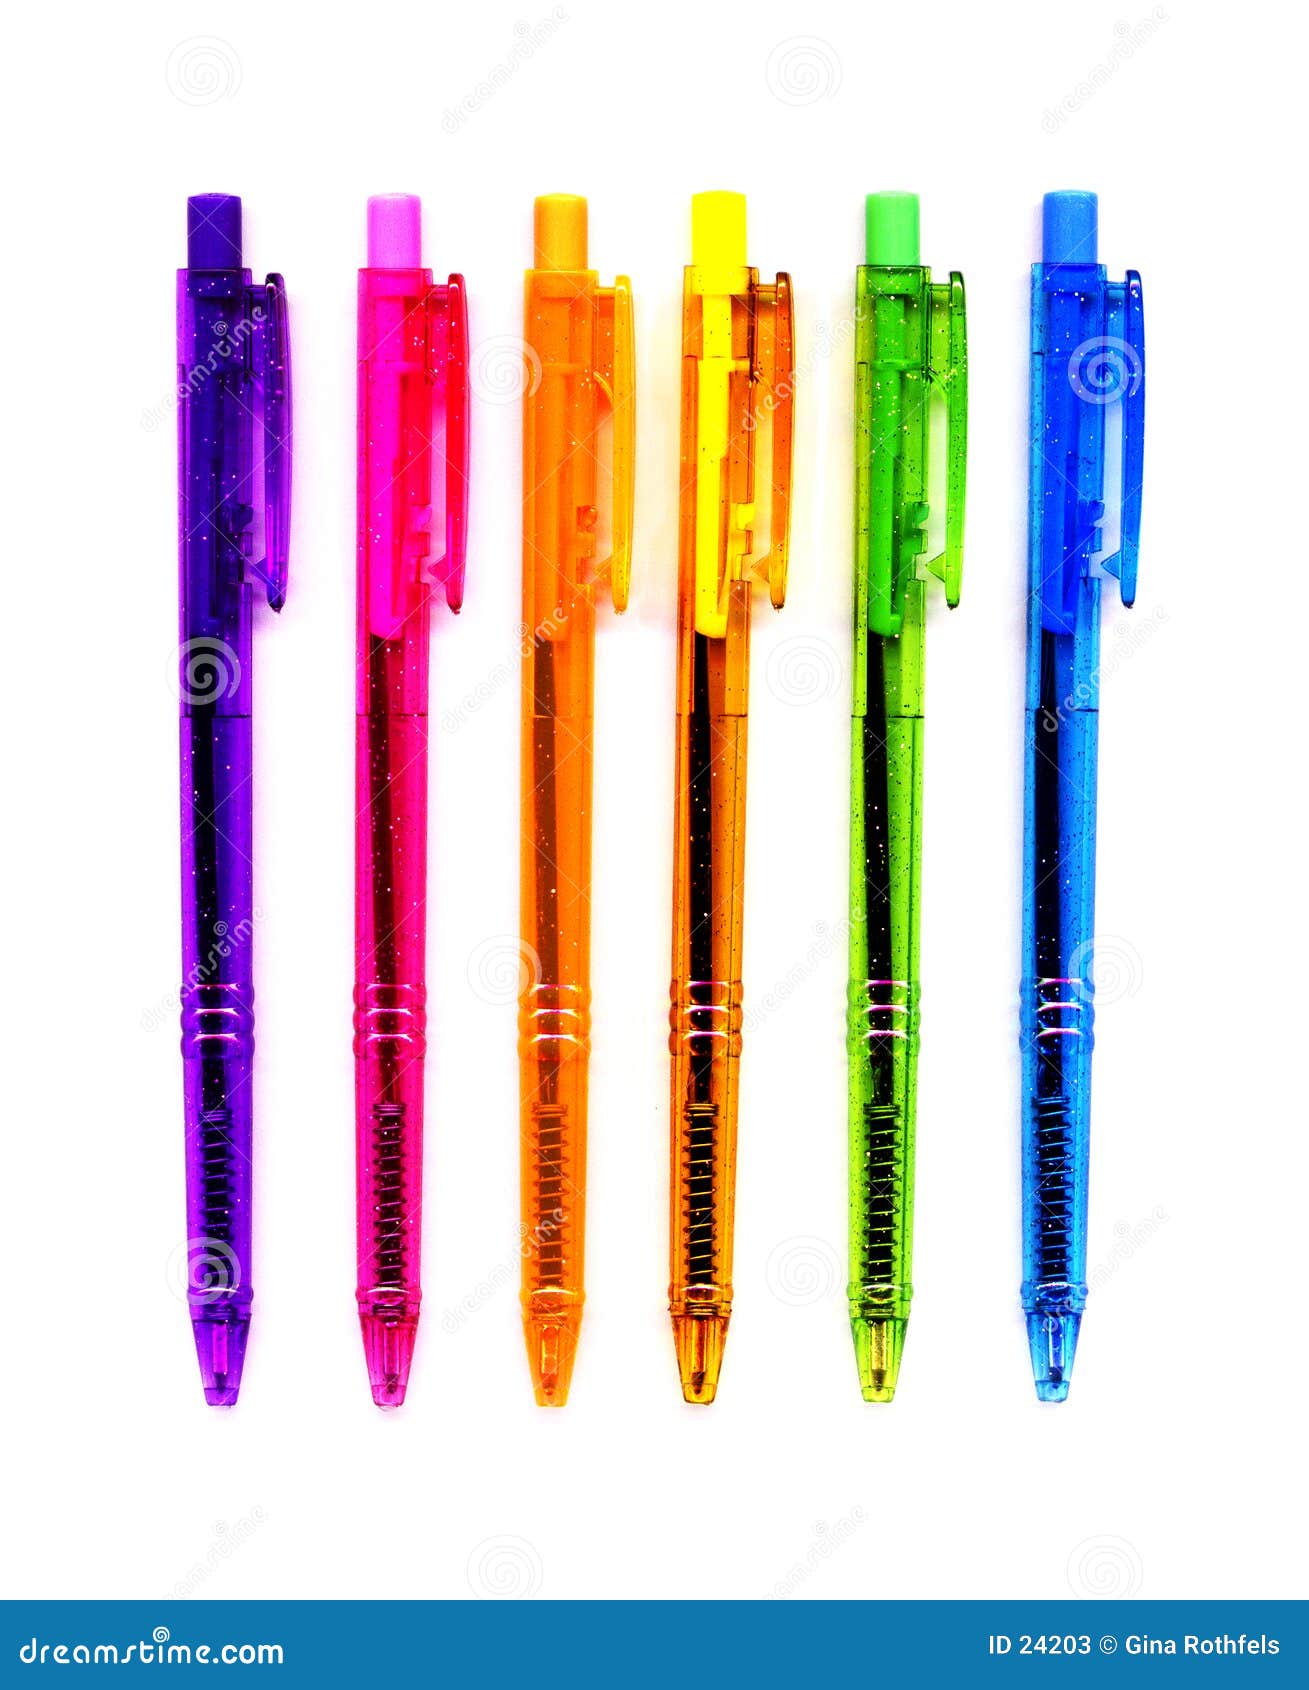 6 neon pens